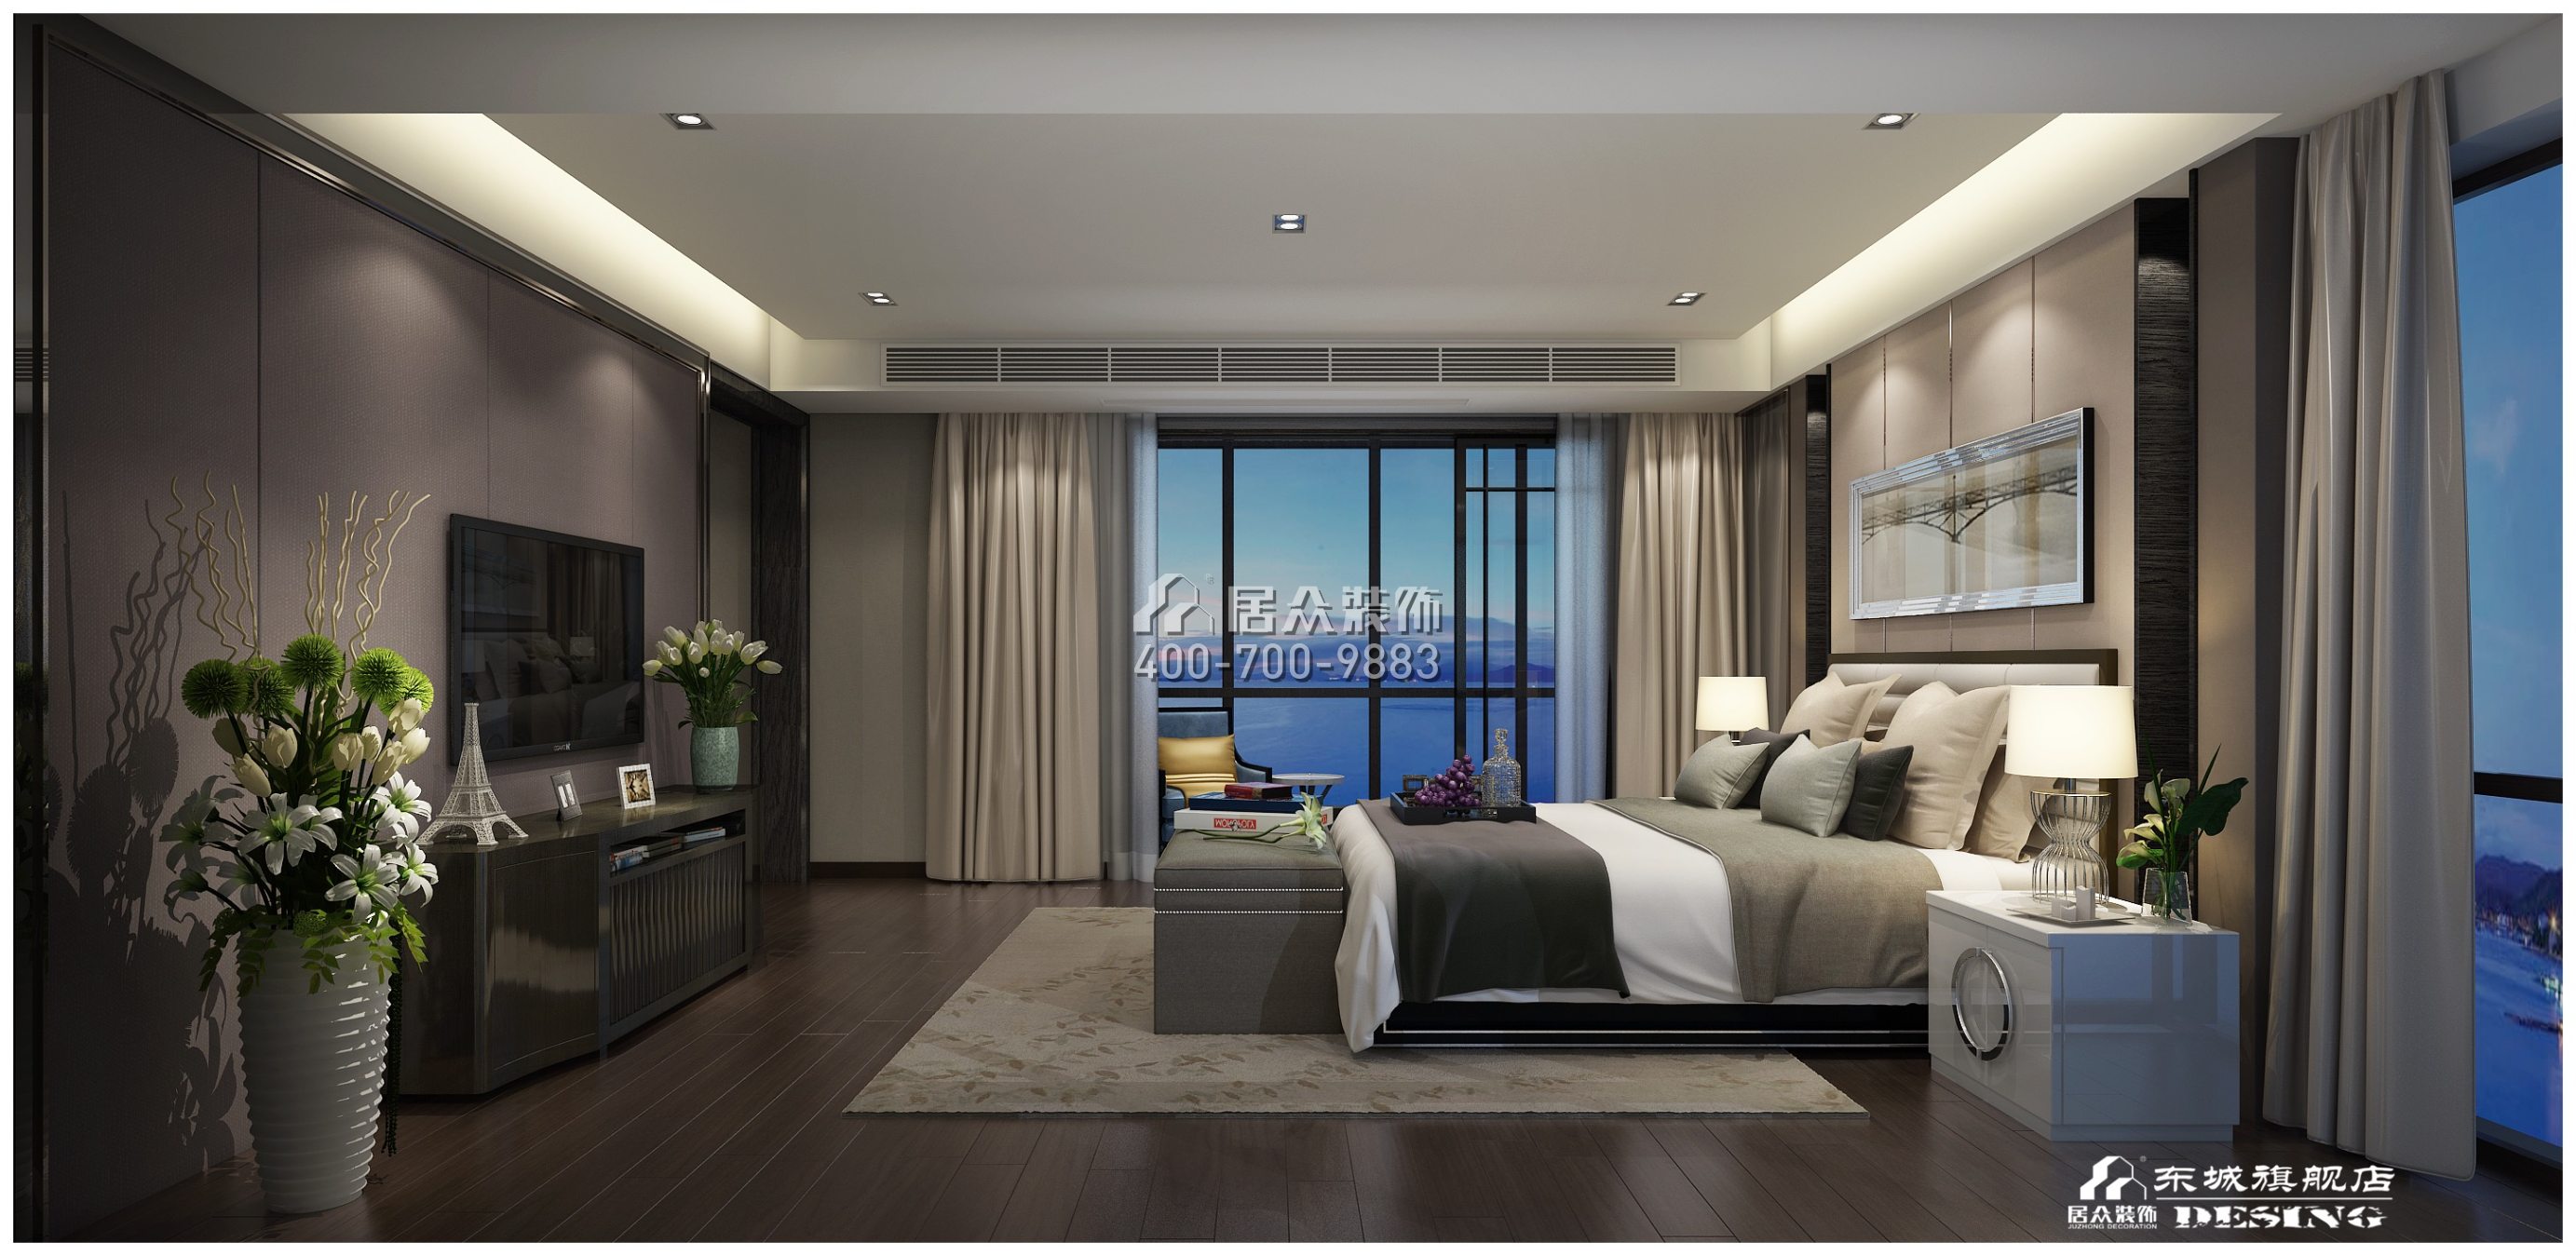 北辰定江洋285平方米现代简约风格平层户型卧室装修效果图